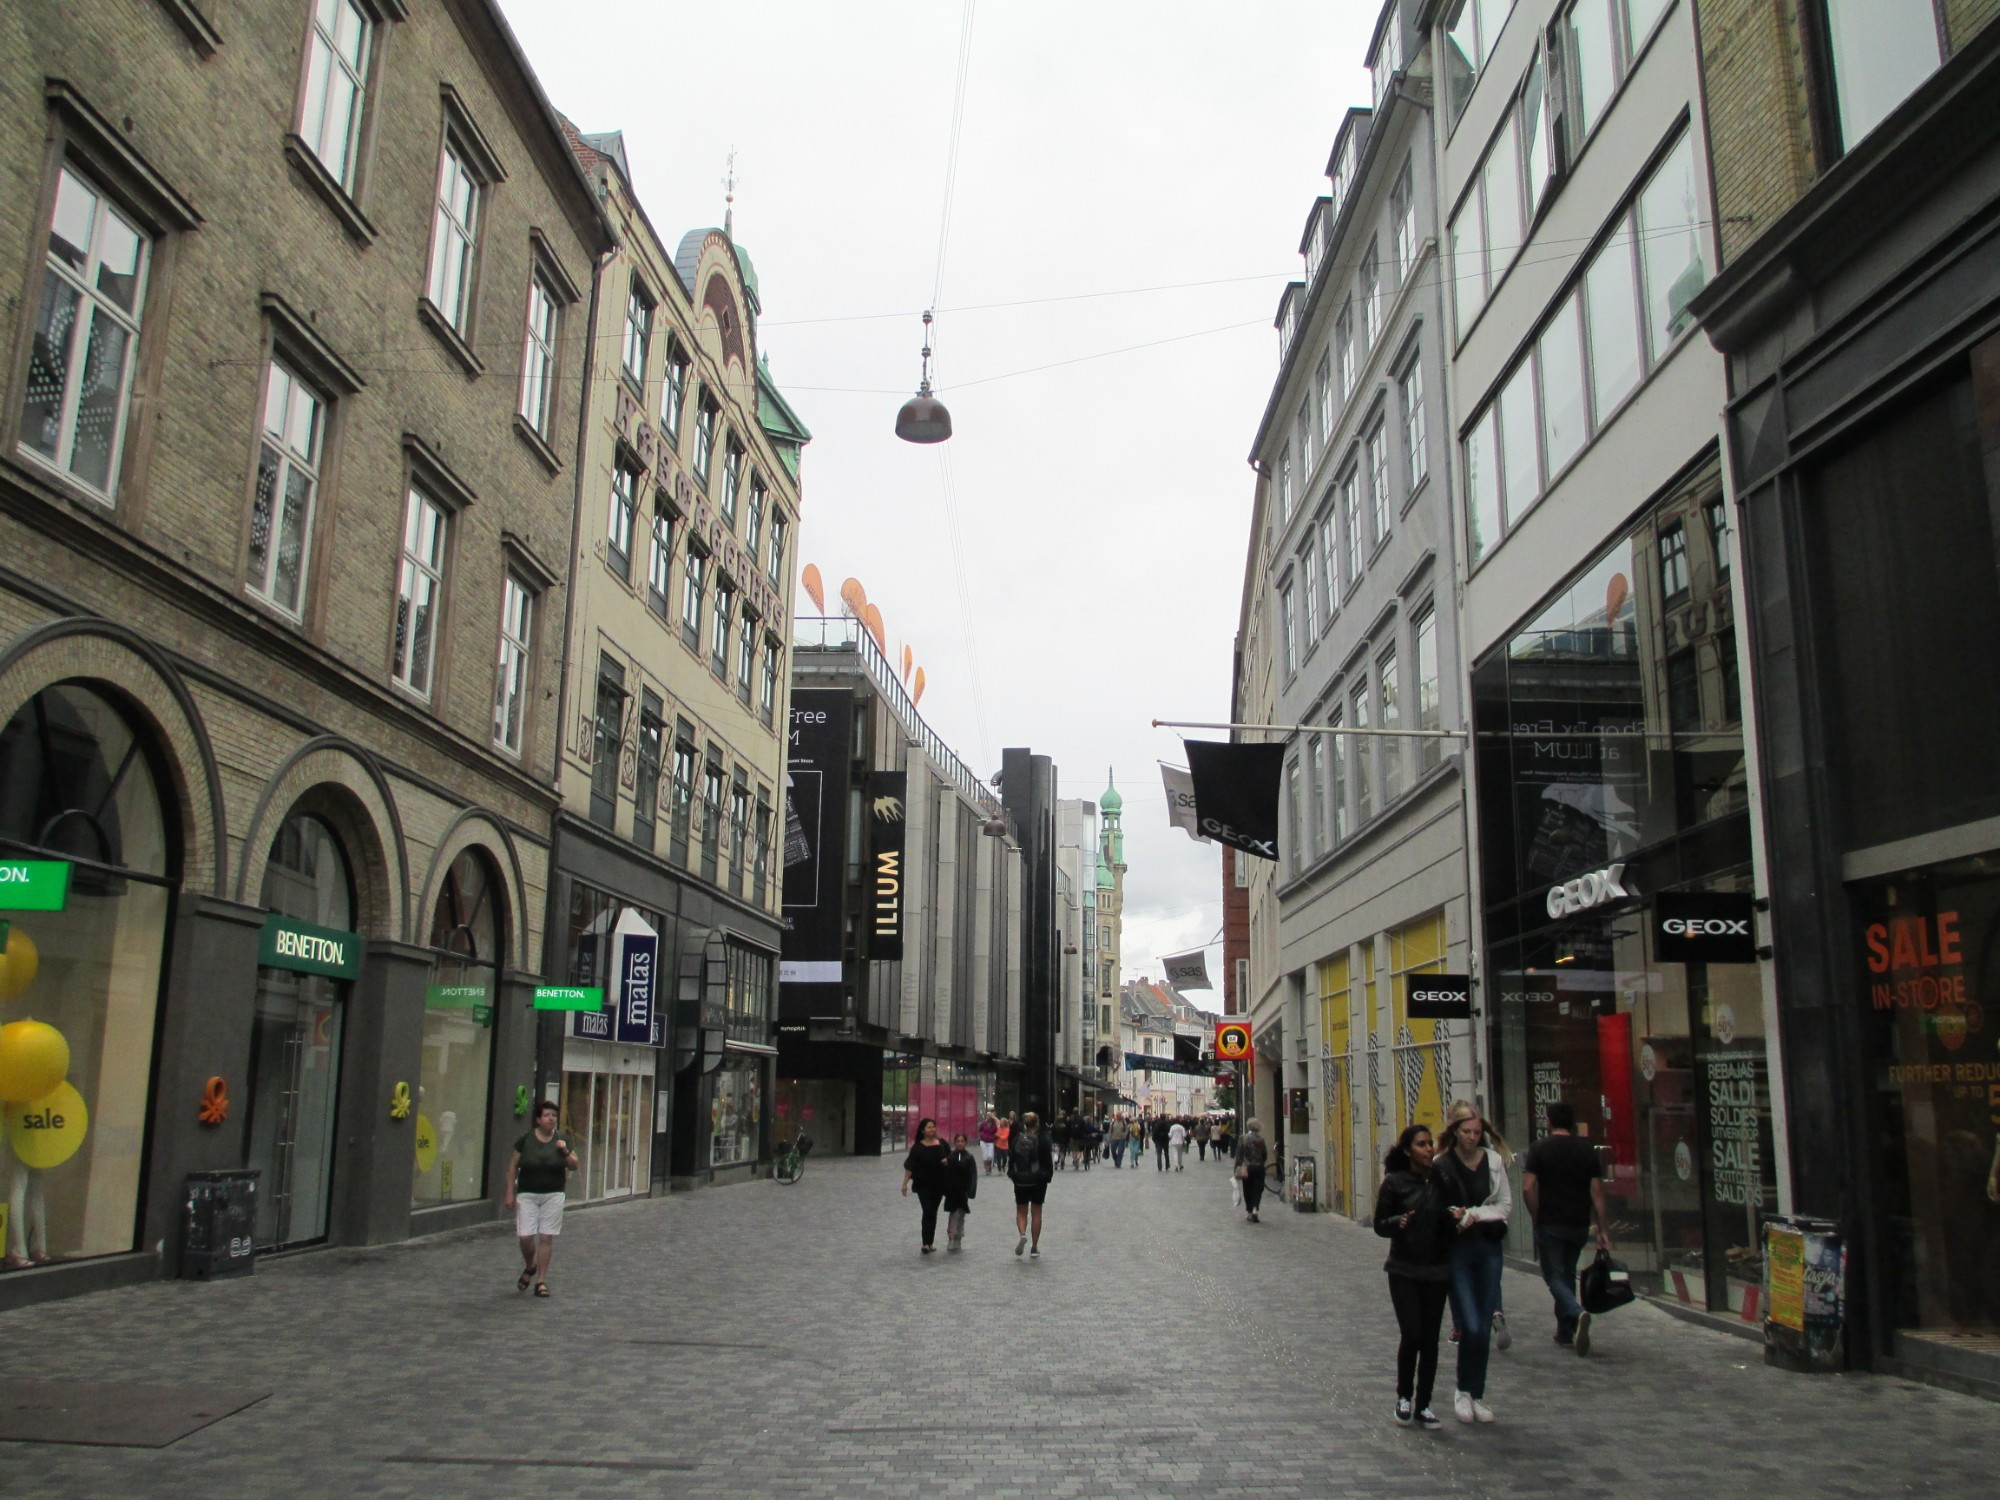 Копенгаген. (14.07.2013)